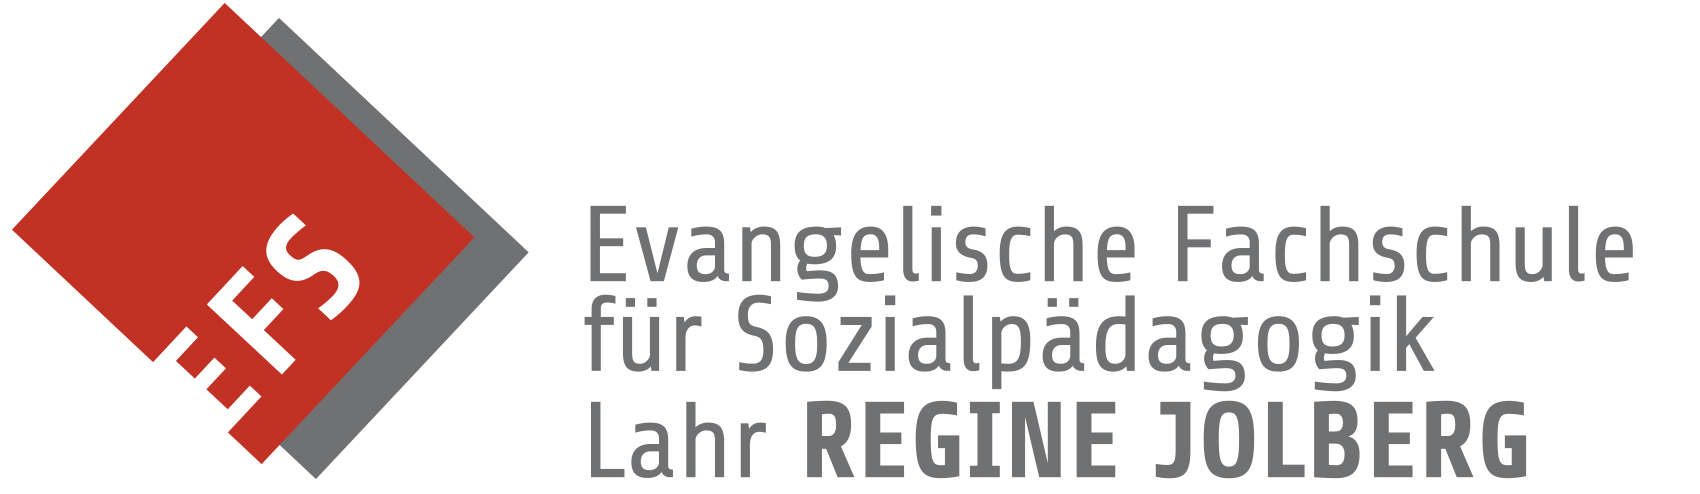 Evangelische Fachschule für Sozialpädagogik Regine Jolberg Lahr